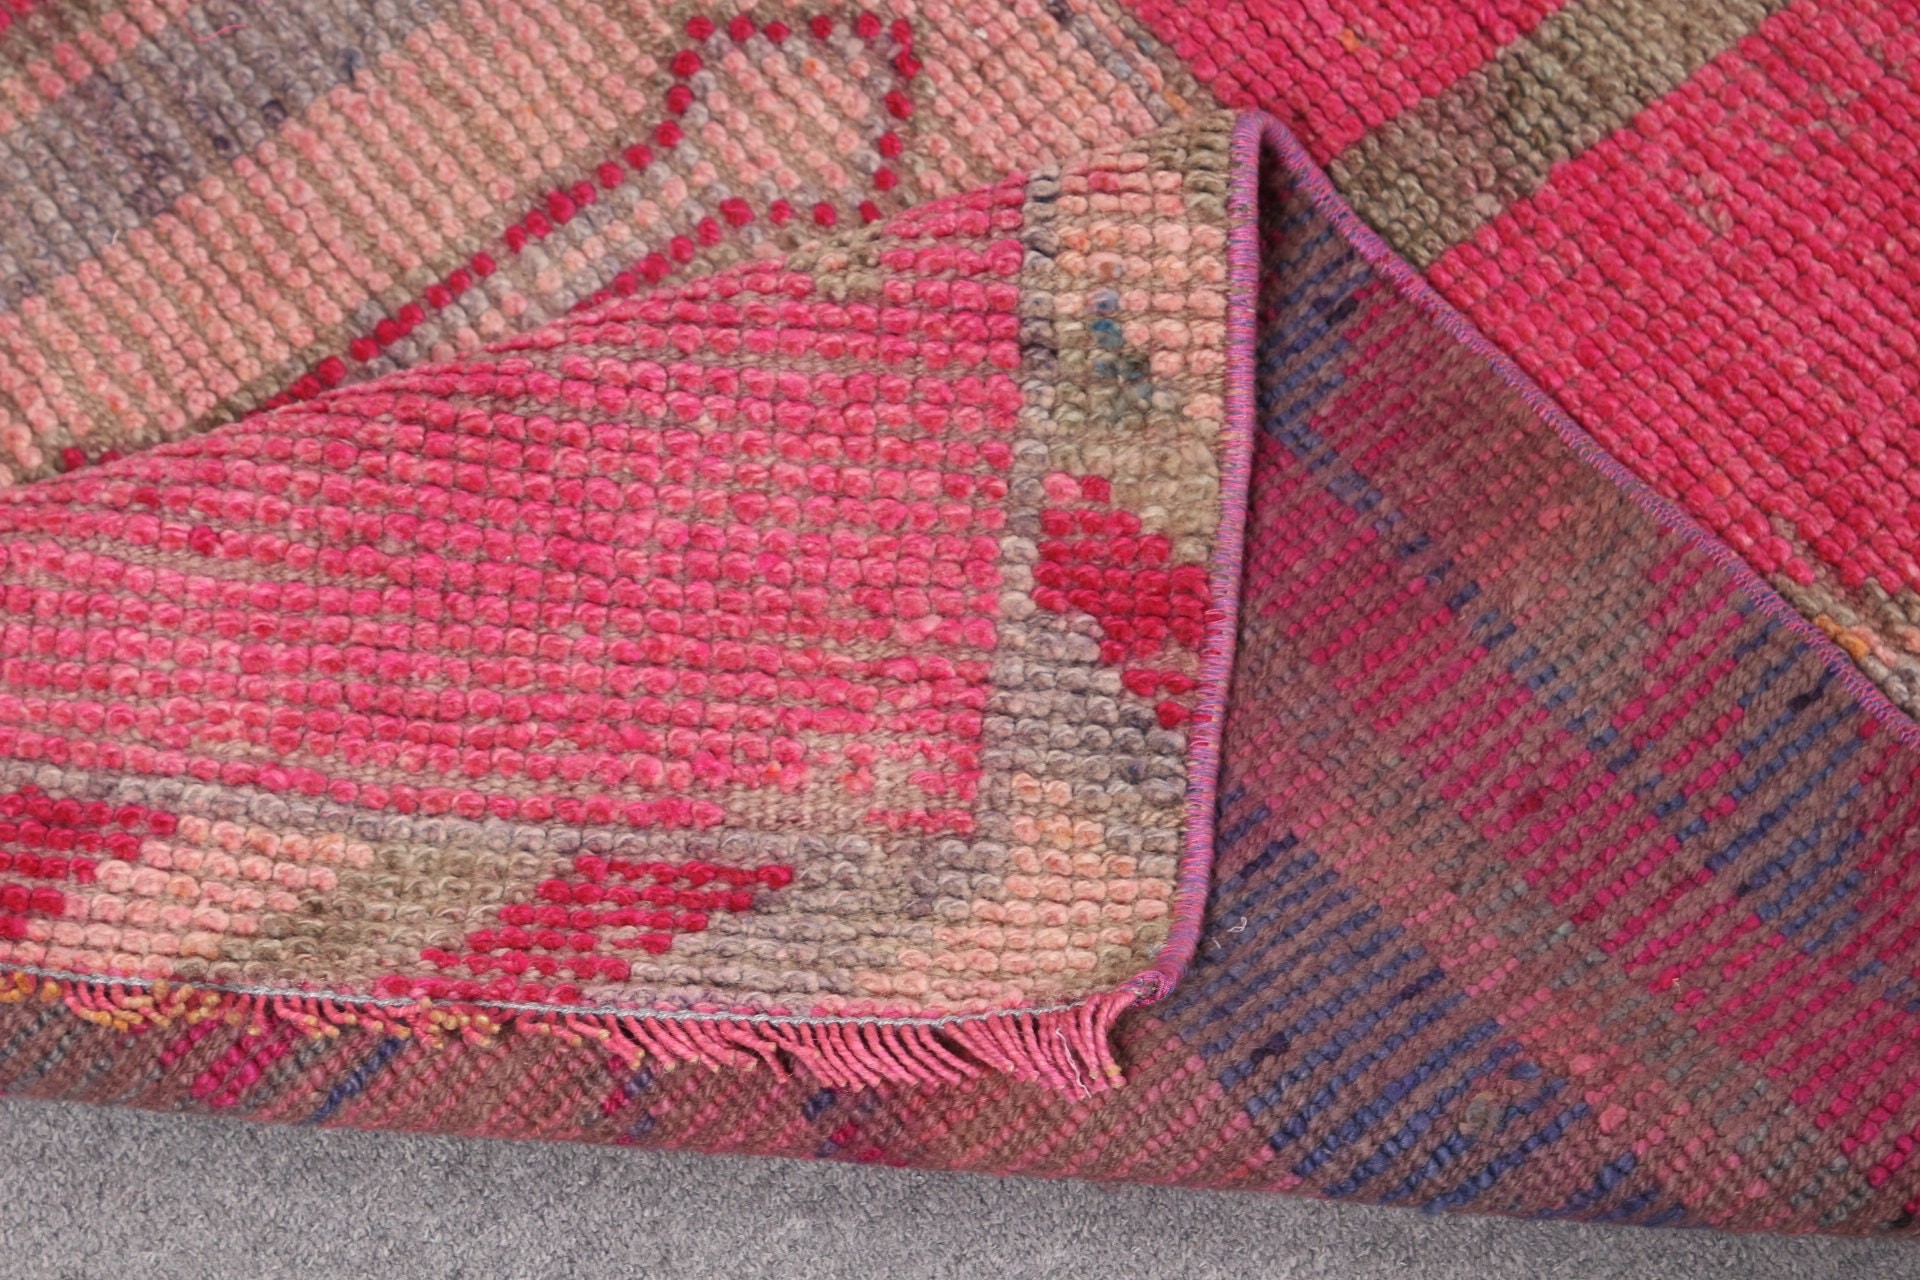 Vintage Rug, Hallway Rug, Rugs for Stair, 2.9x10.1 ft Runner Rug, Turkish Rug, Kitchen Rugs, Ethnic Rug, Pink Floor Rugs